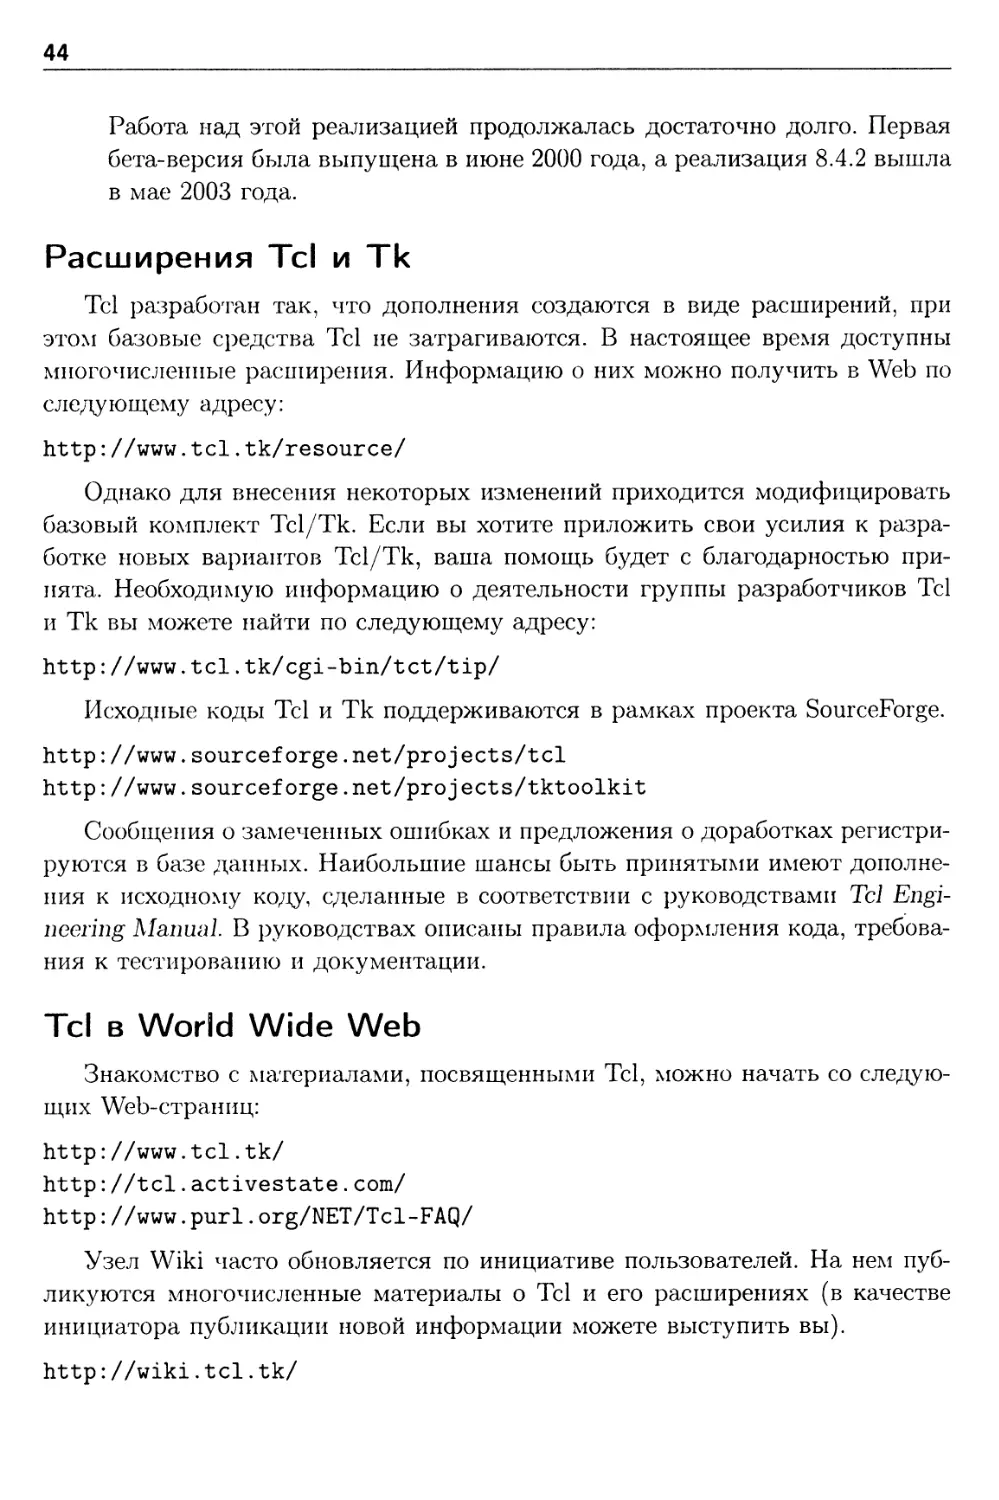 Расширения Tcl и Тк
Tcl в World Wide Web